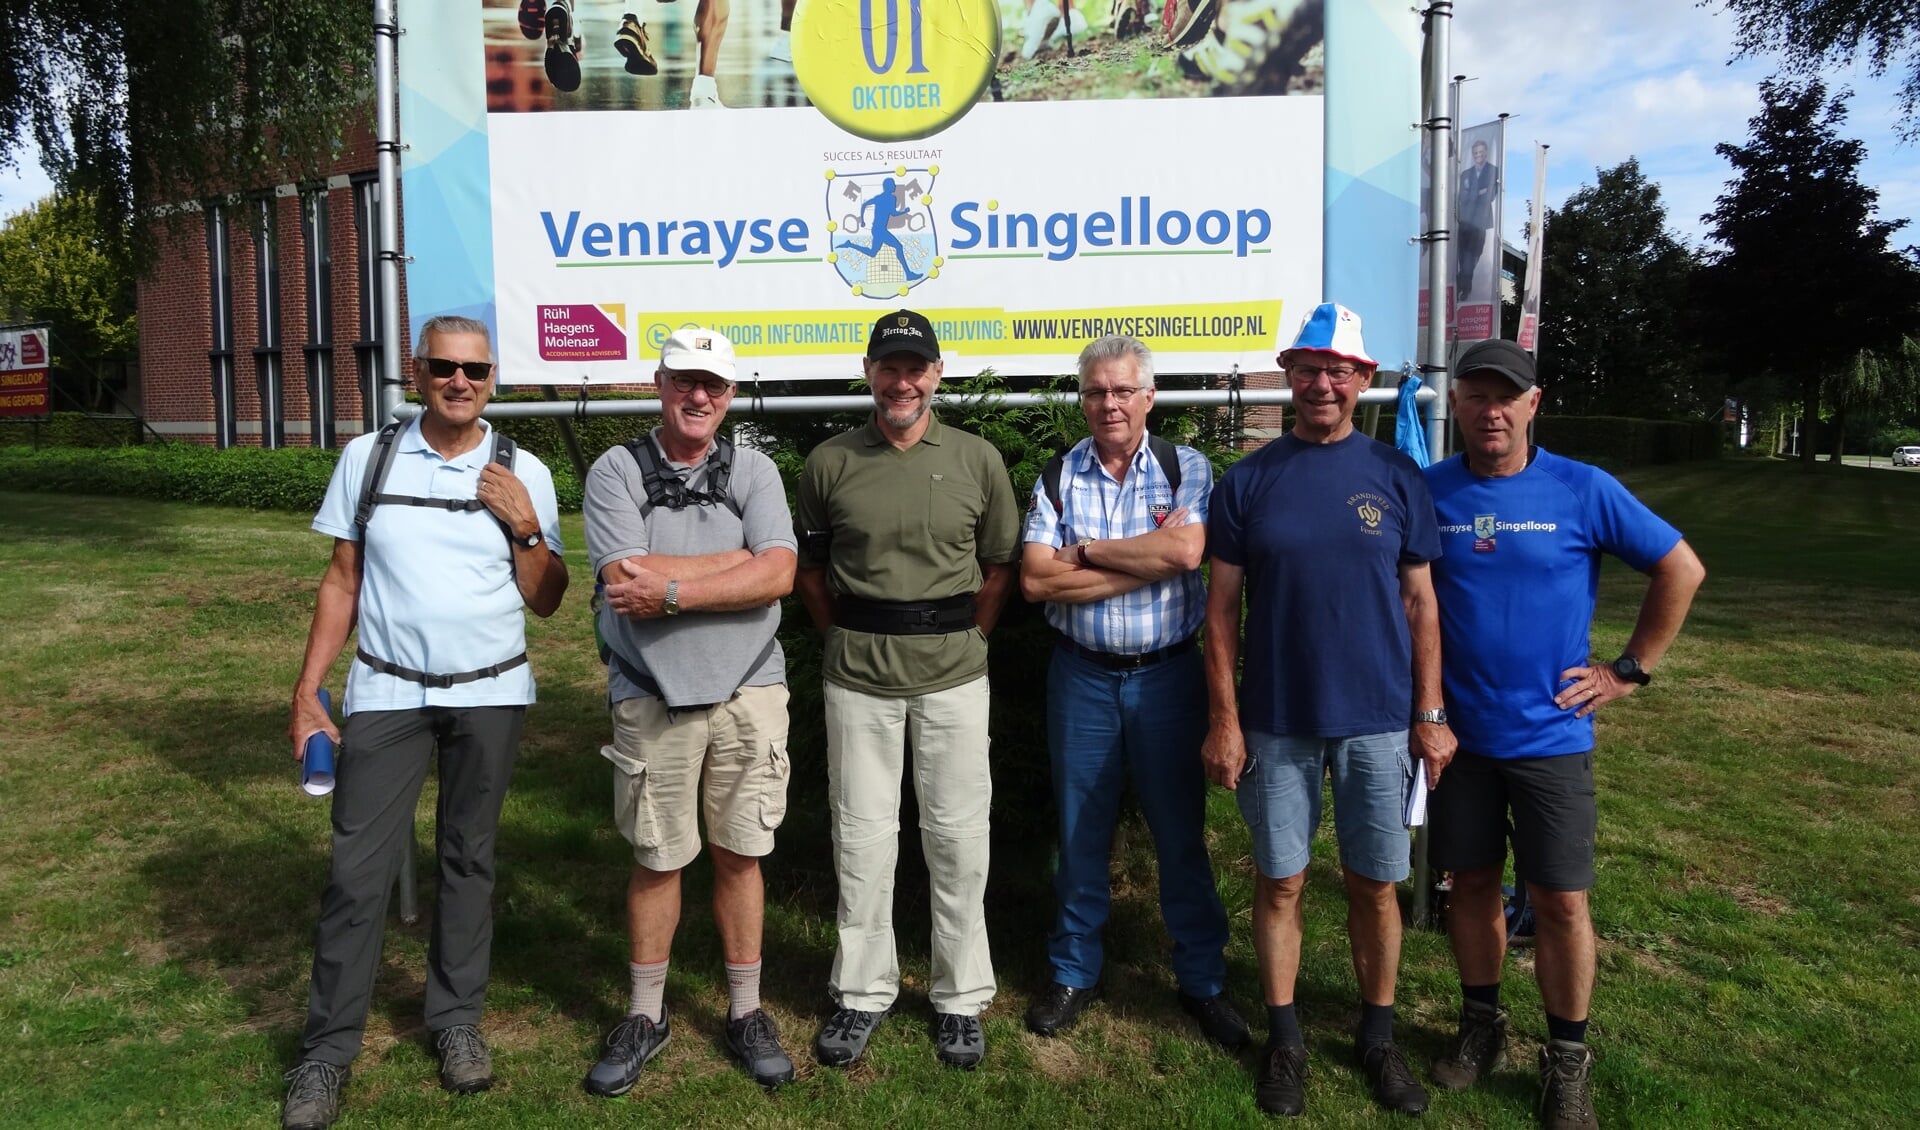 De wandelcommissie van de Singelloop: v.l.n.r. Bert van der Krabben, Antoon van der Sterren, Hans Hudales, Peter Vullings, Piet Lensen, Michel Thomassen.